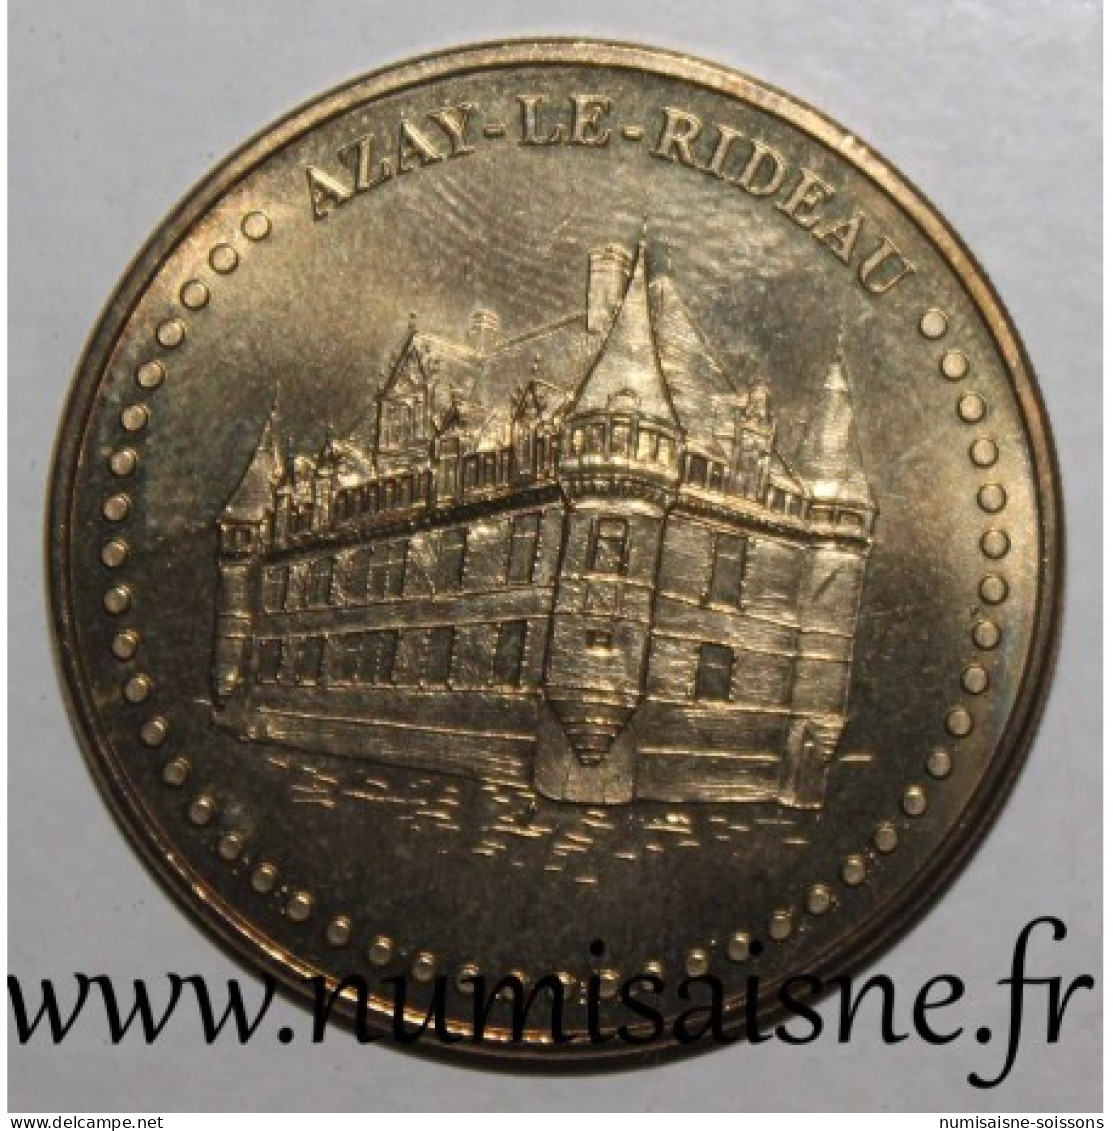 37 - AZAY LE RIDEAU - CHATEAU - Monnaie De Paris - 2013 - 2013